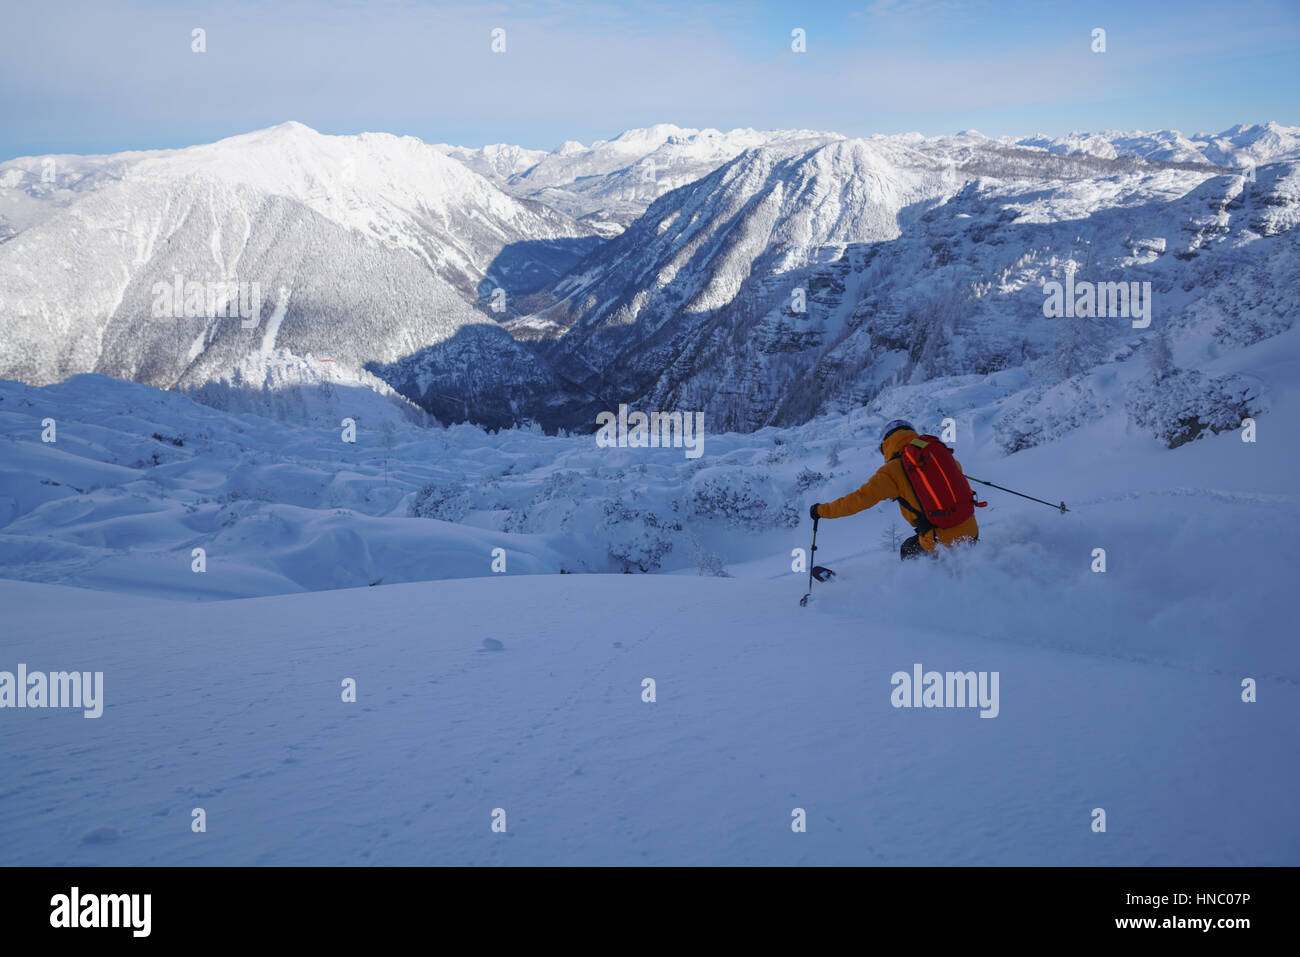 Man skiing in deep powder snow, Krippenstein, Gmunden, Austria Stock Photo